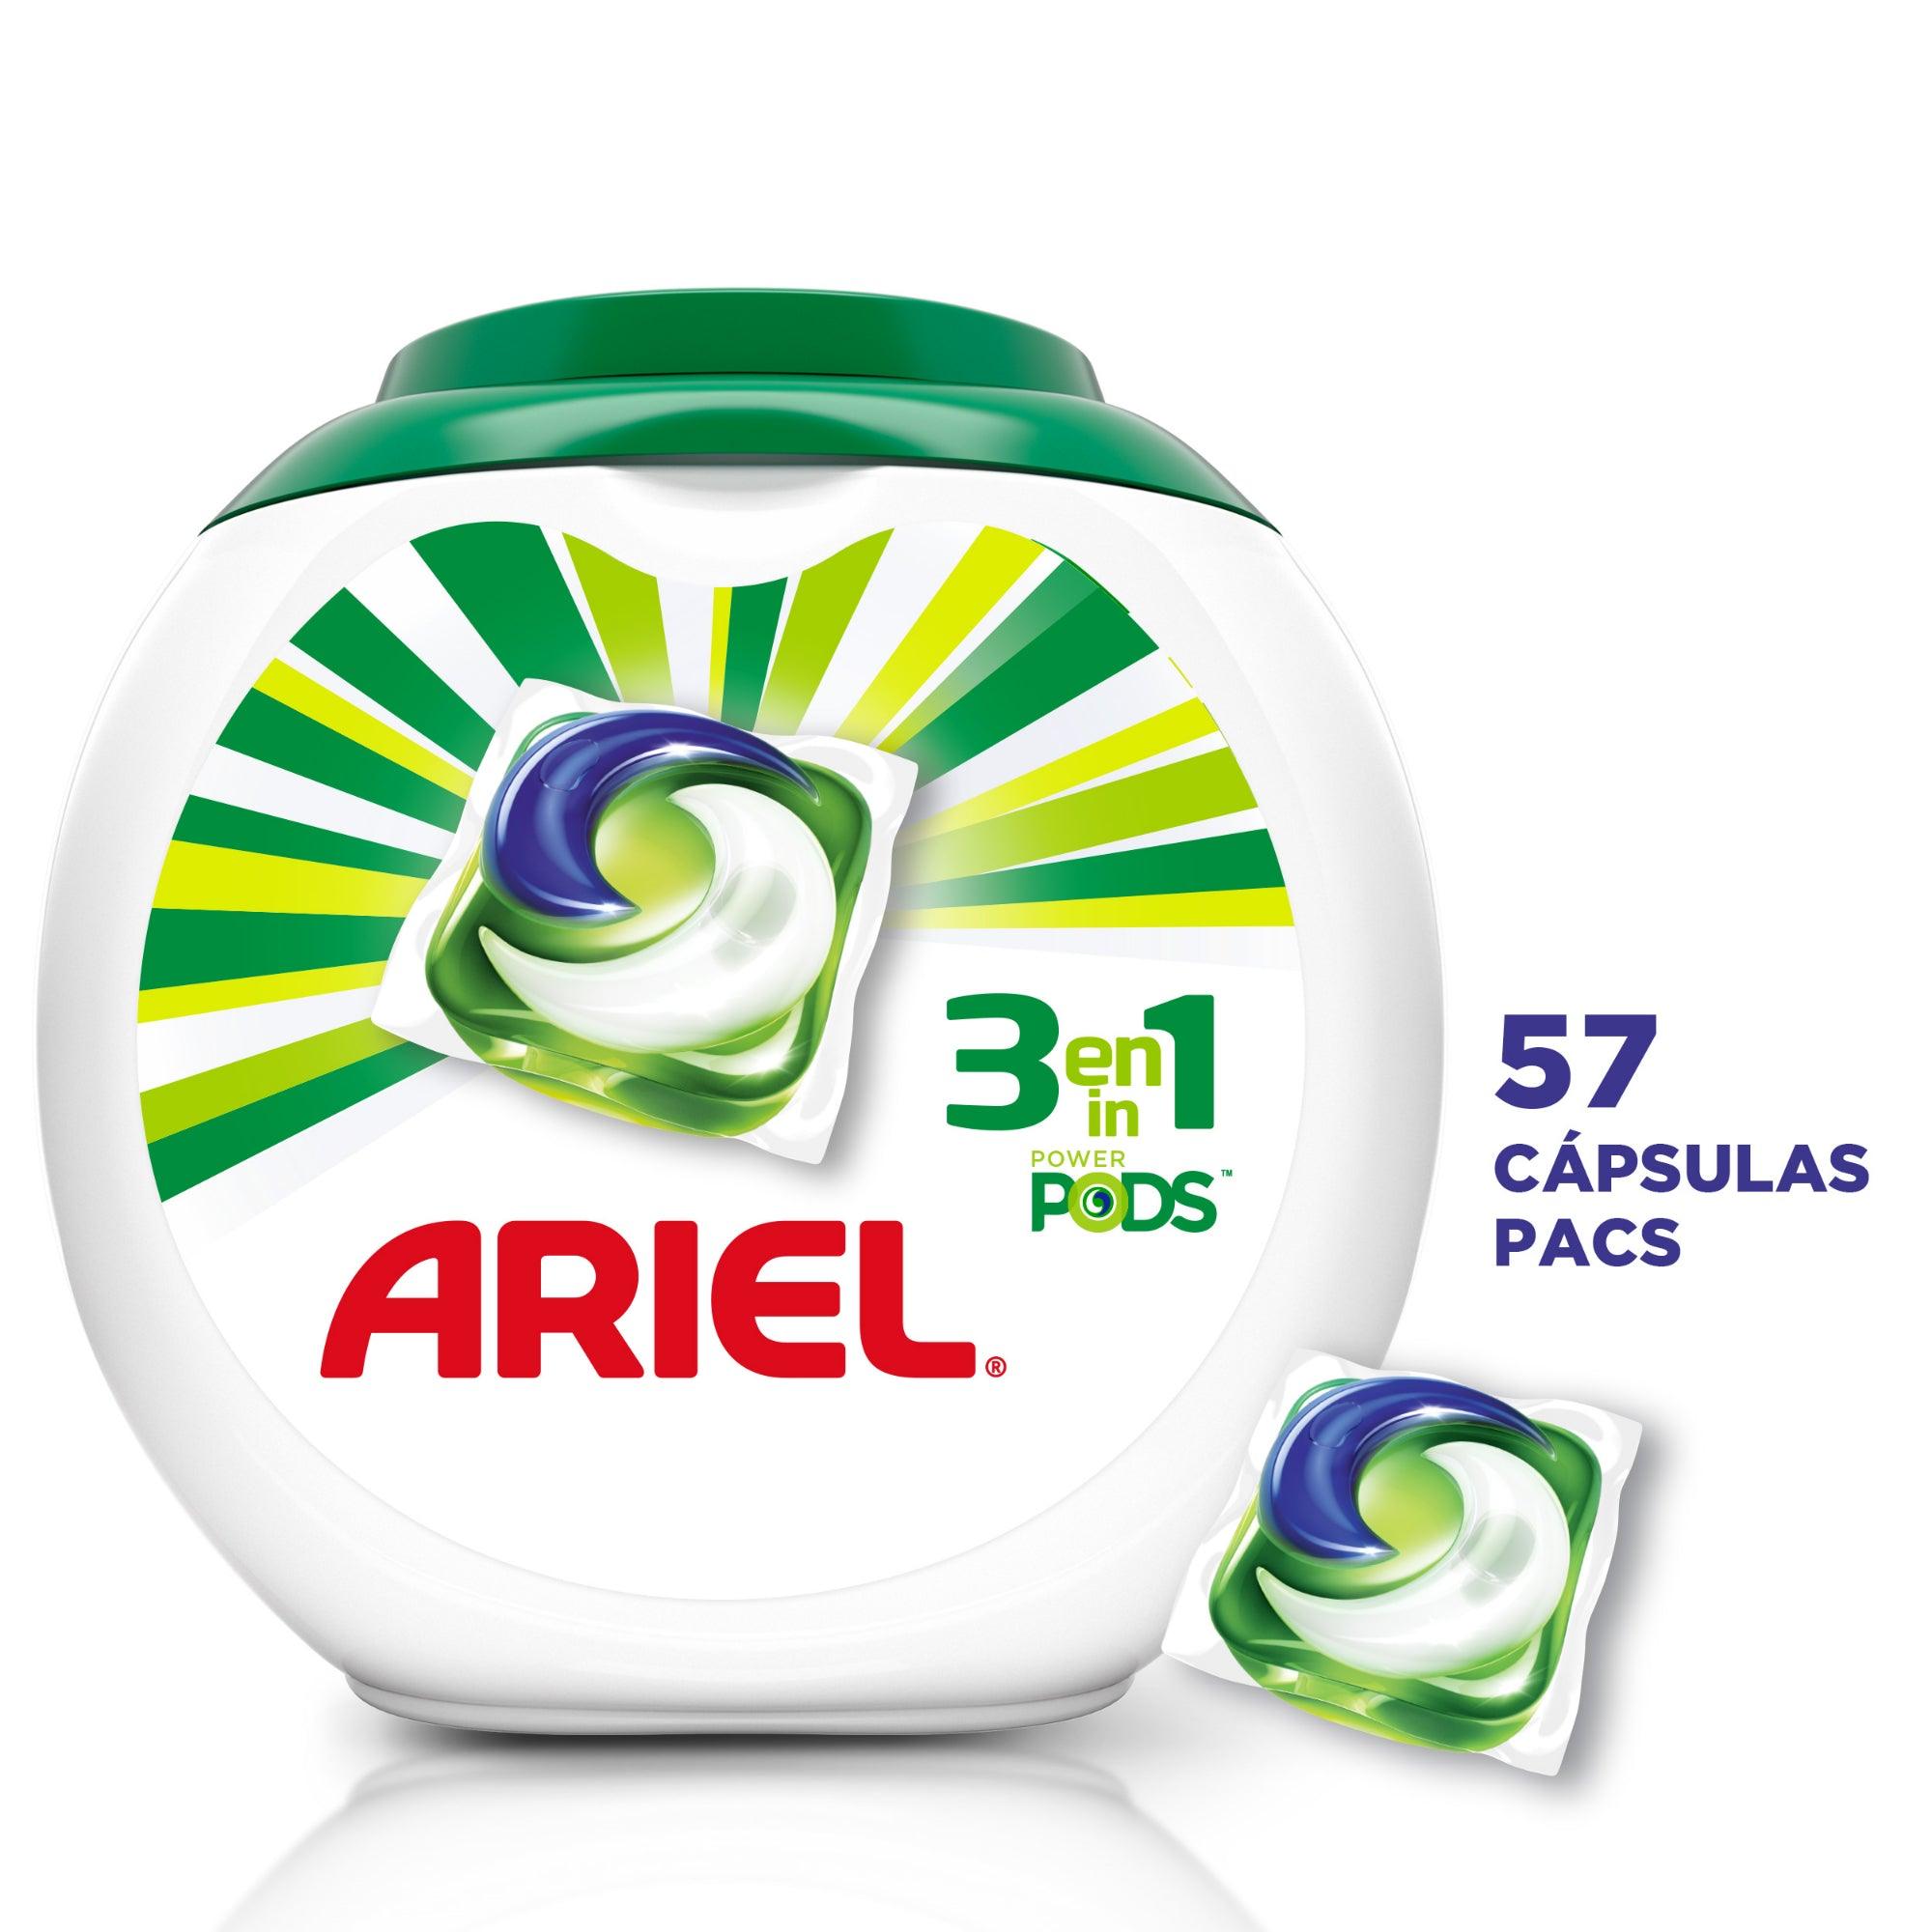 Ariel Detergente ropa 2 x 57 unid